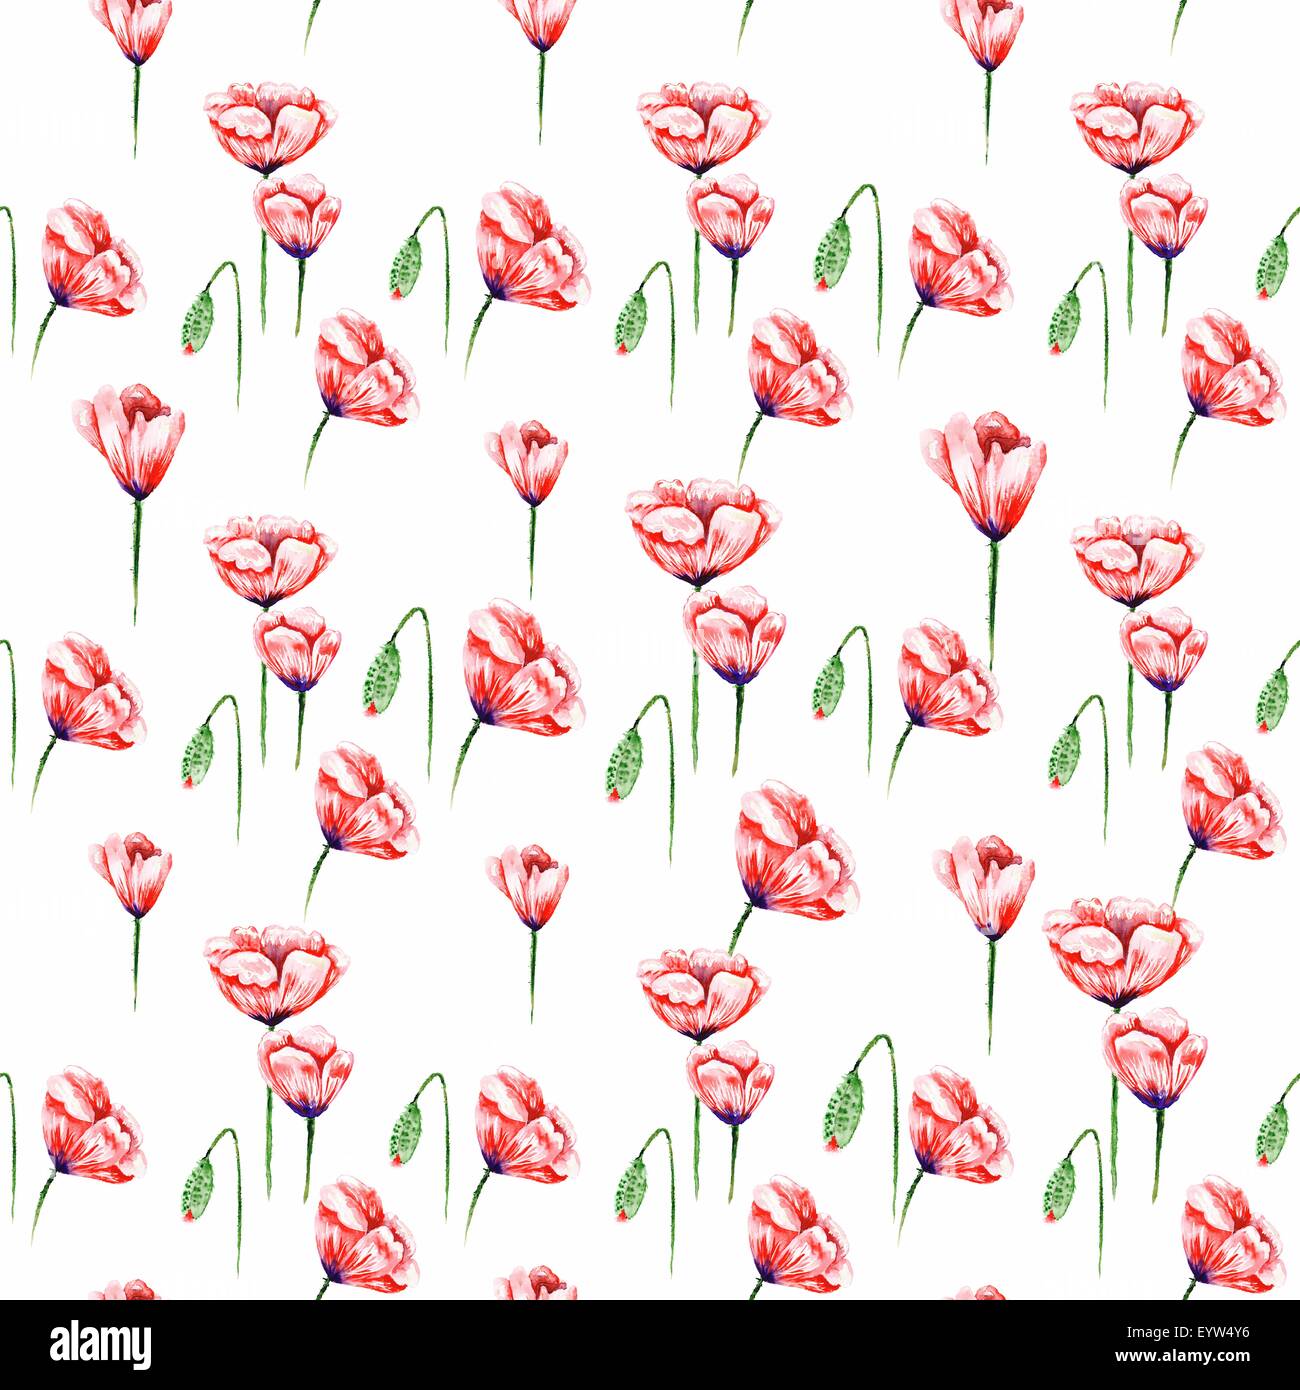 Acquerello Seamless texture con fiori di colore rosso isolato su sfondo bianco per i tessili, carta da parati, design di estate Foto Stock